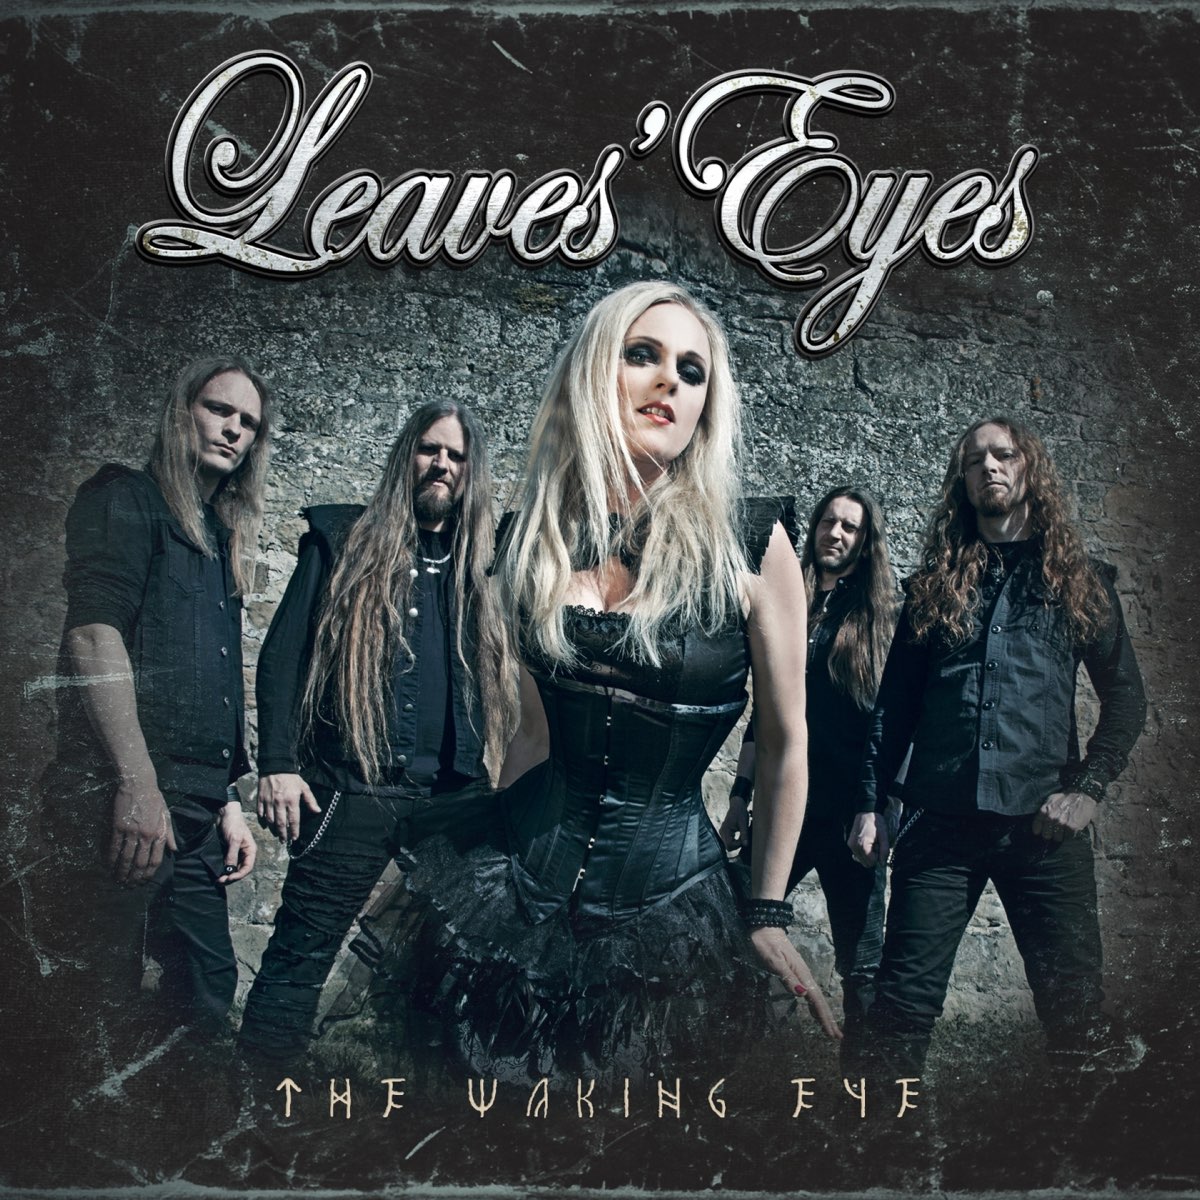 Группа leaves’ Eyes. Группа leaves’ Eyes 2019. Leaves' Eyes 2015 King of Kings. Leaves' Eyes - discography.